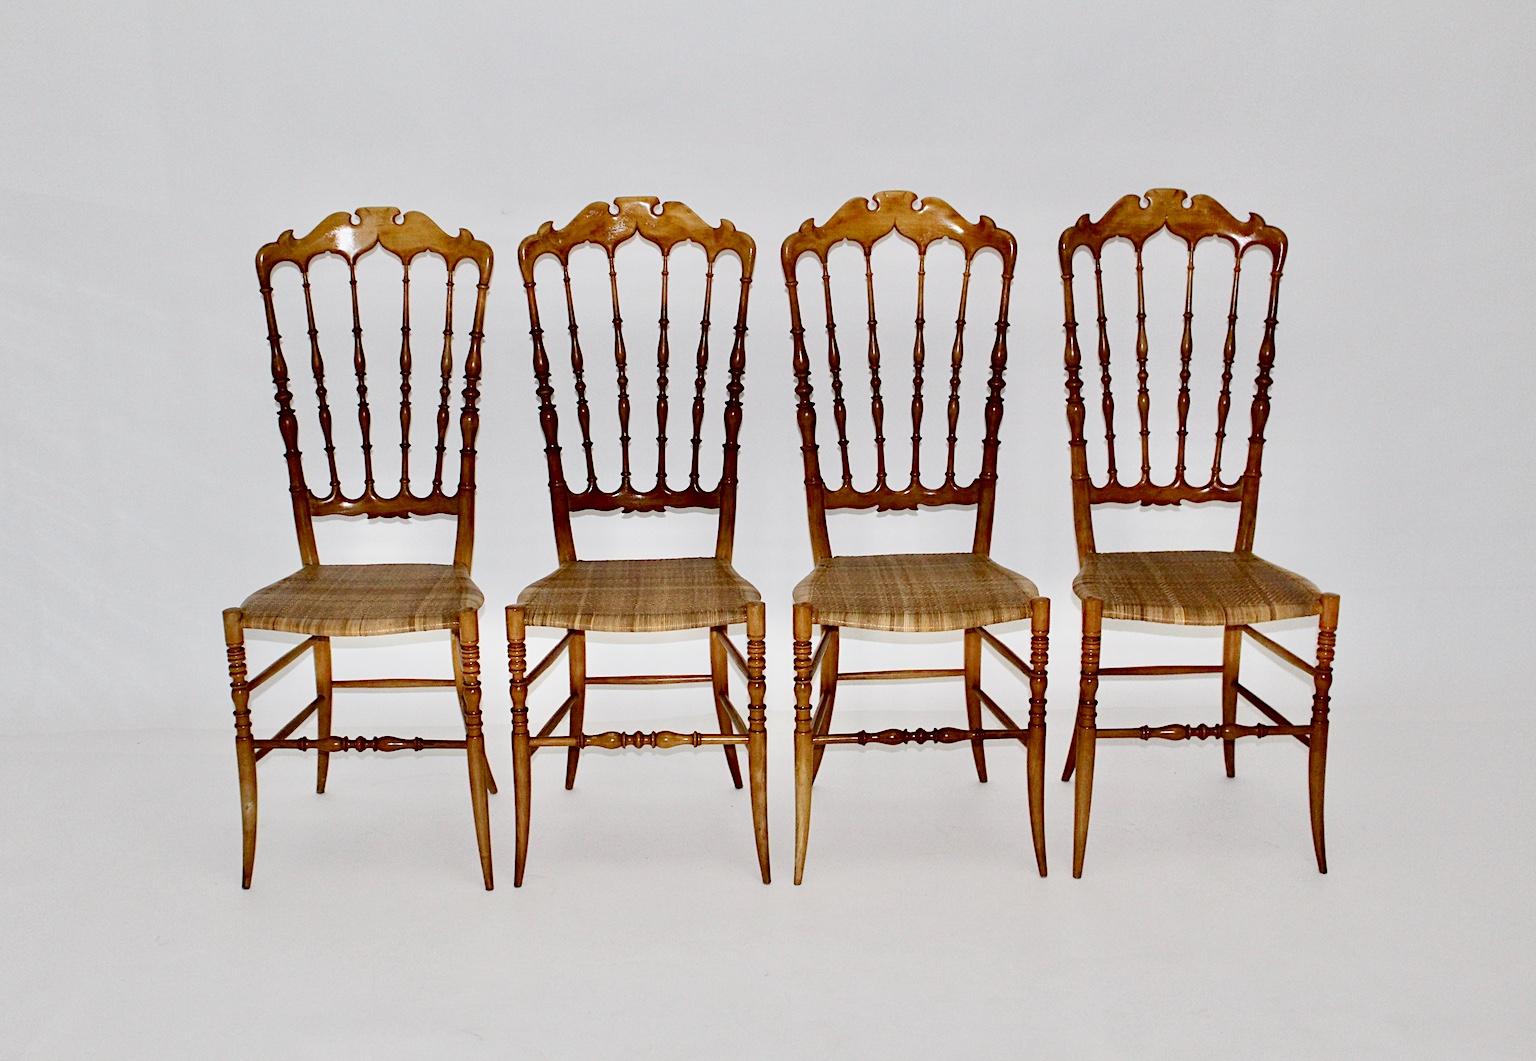 Mid Century Modern entzückende Satz von 4 Buche Esszimmerstühle / Stühle mit einer hohen Rückenlehne wurde in Italien von Chiavari, 1950er Jahre handgefertigt.
Die vier Esszimmerstühle haben ein gedrechseltes, naturlackiertes Gestell aus massiver